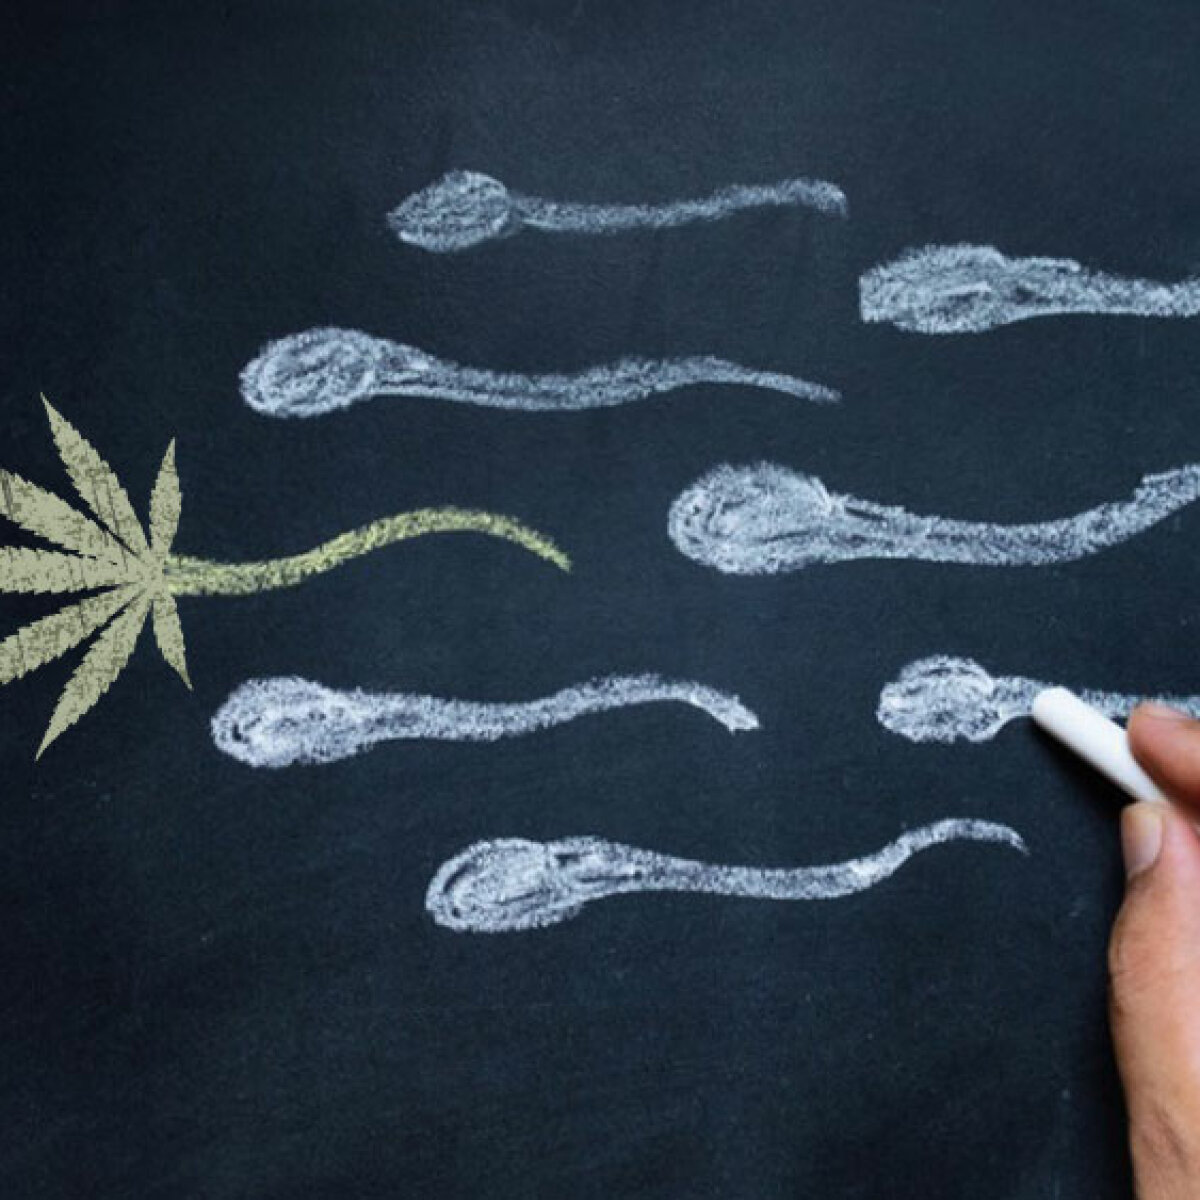 Влияет курение марихуаны зачатие ребенка биологическая ценность семян конопли